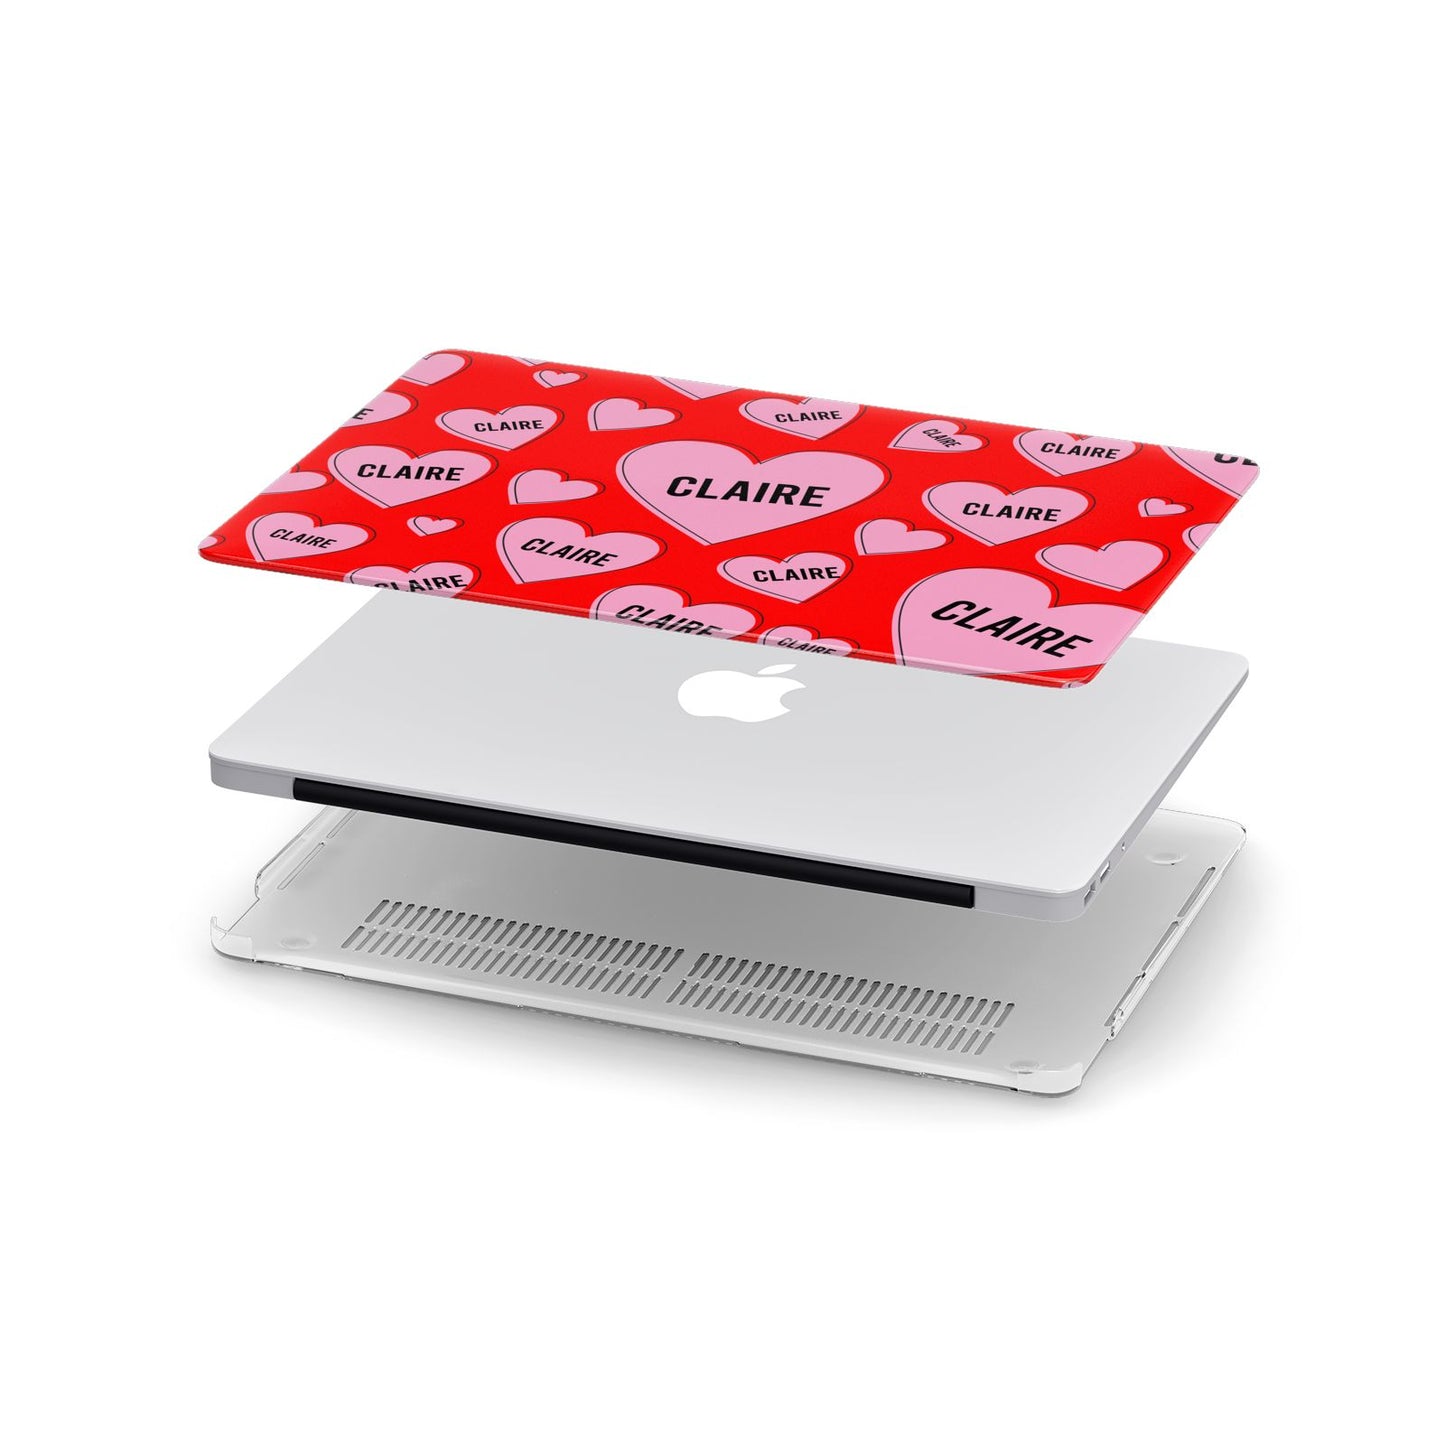 Personalised Hearts Apple MacBook Case in Detail